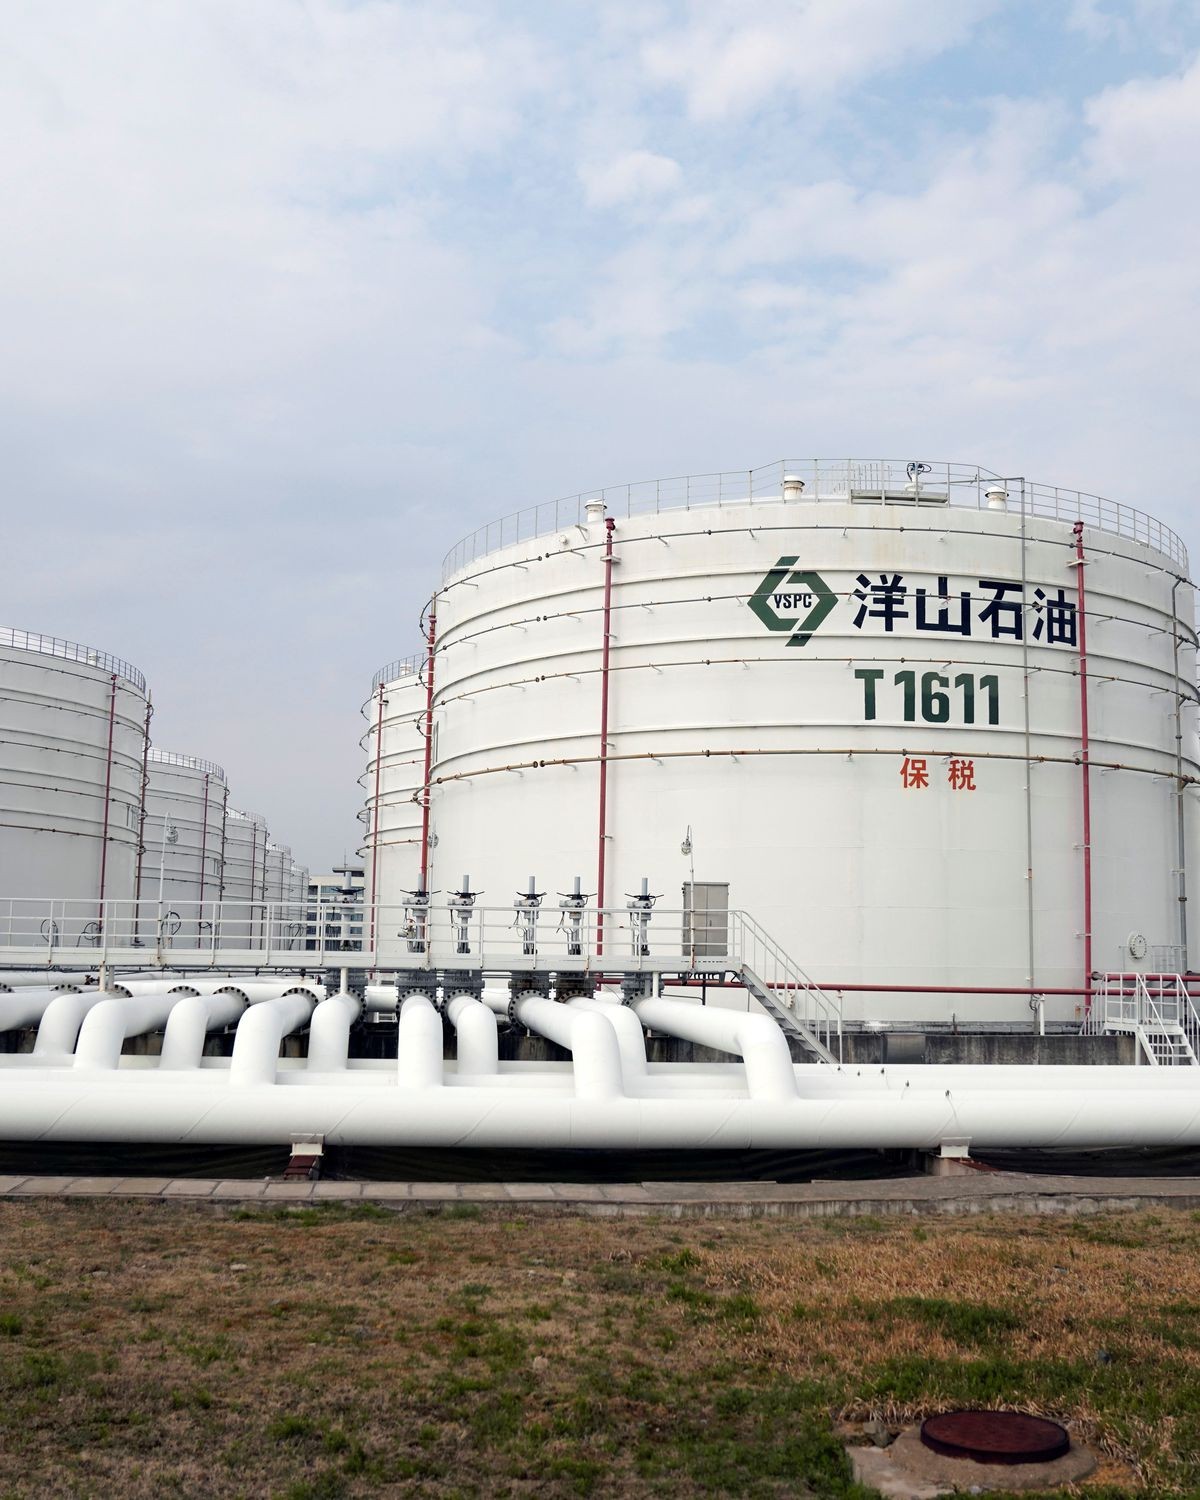 (11.21) Saudi Arabia tiếp tục là nhà cung cấp dầu mỏ hàng đầu của Trung Quốc trong 11 tháng liên tiếp. (Nguồn: Reuters)